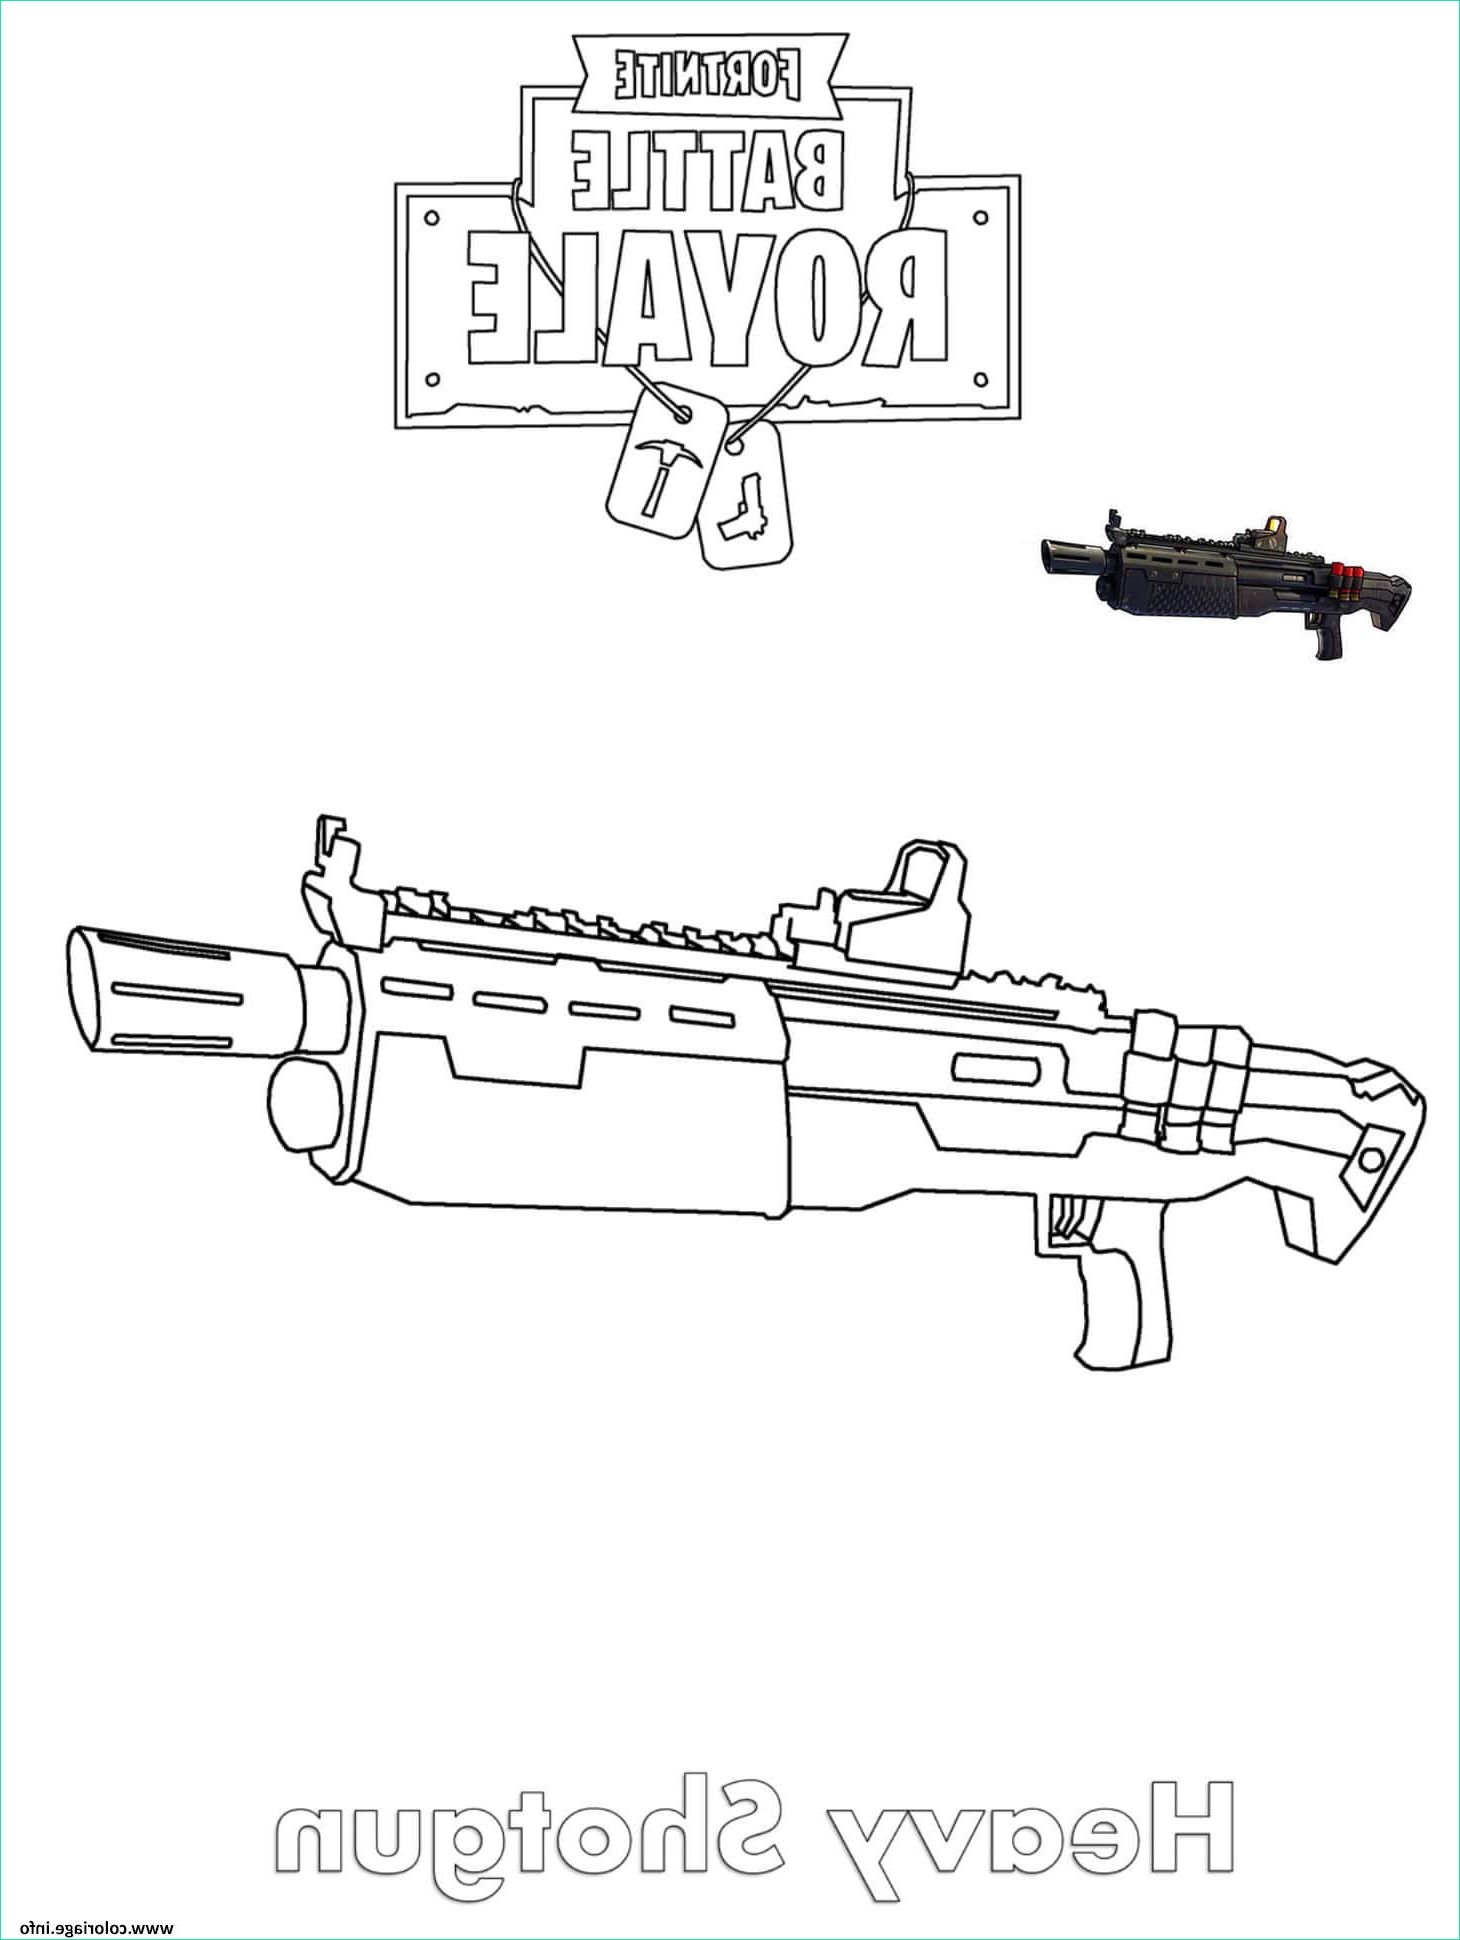 heavy shotgun fortnite coloriage dessin